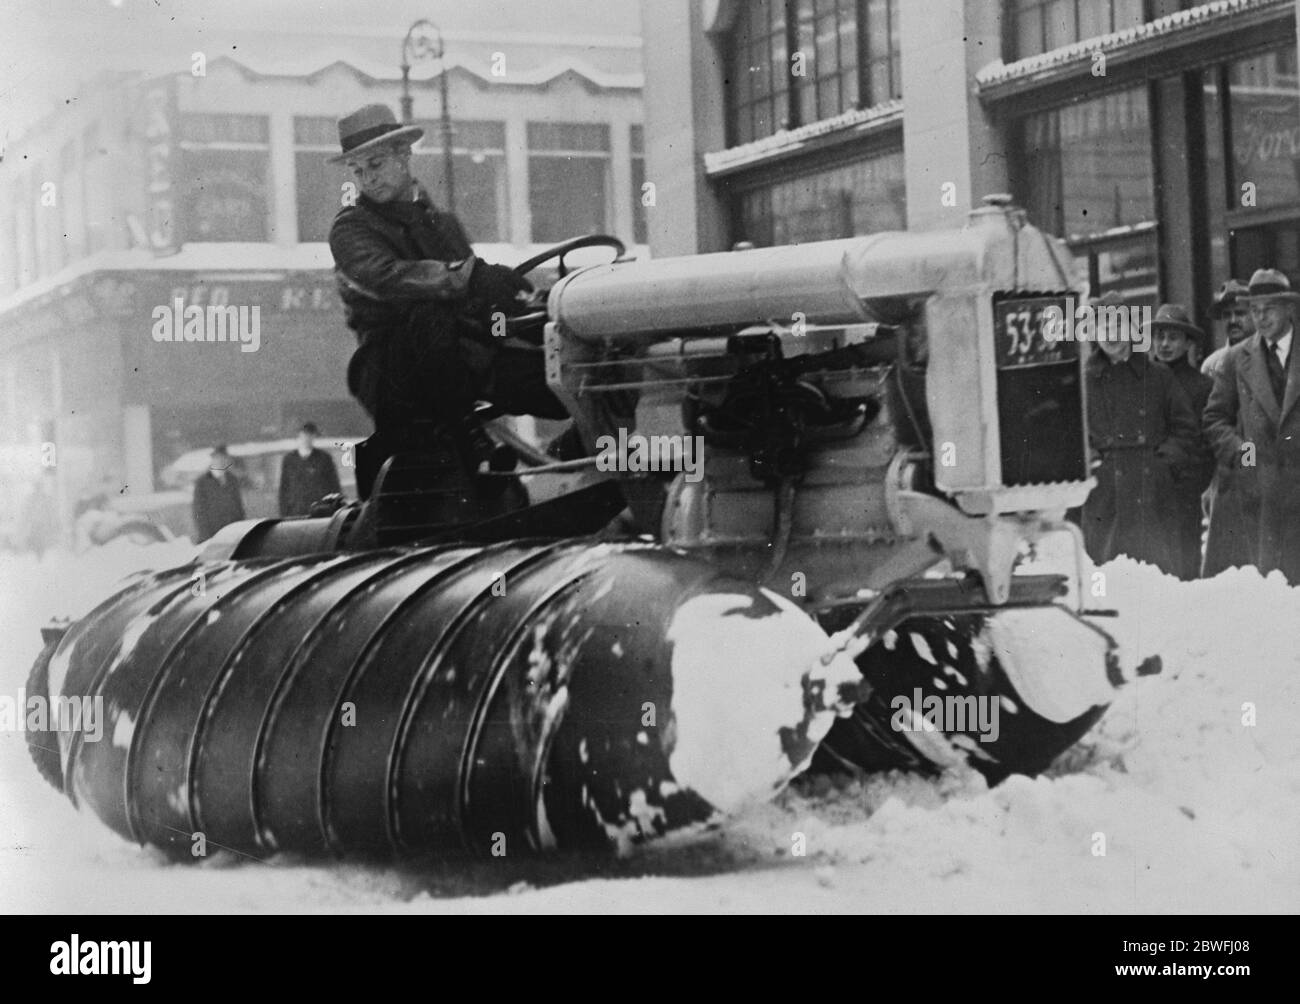 Motori da neve a New York motori da neve visti al lavoro nelle strade di New York dopo una grave tempesta di neve 13 febbraio 1926 Foto Stock